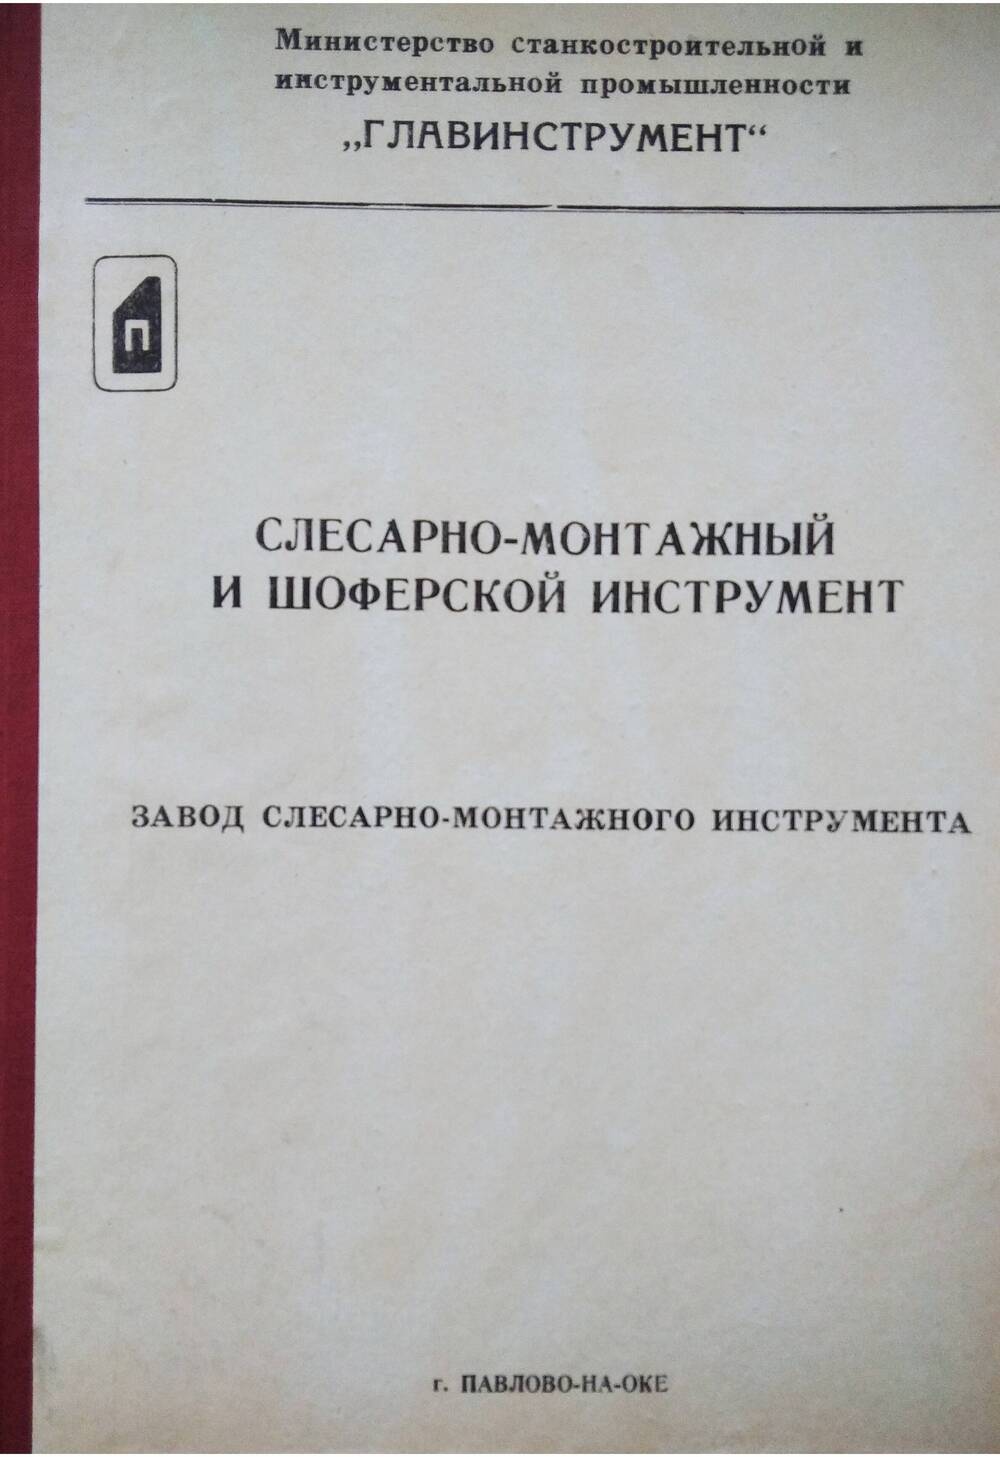 Каталог Слесарно-монтажный и шоферский инструмент, г.Павлово Горьковской области.